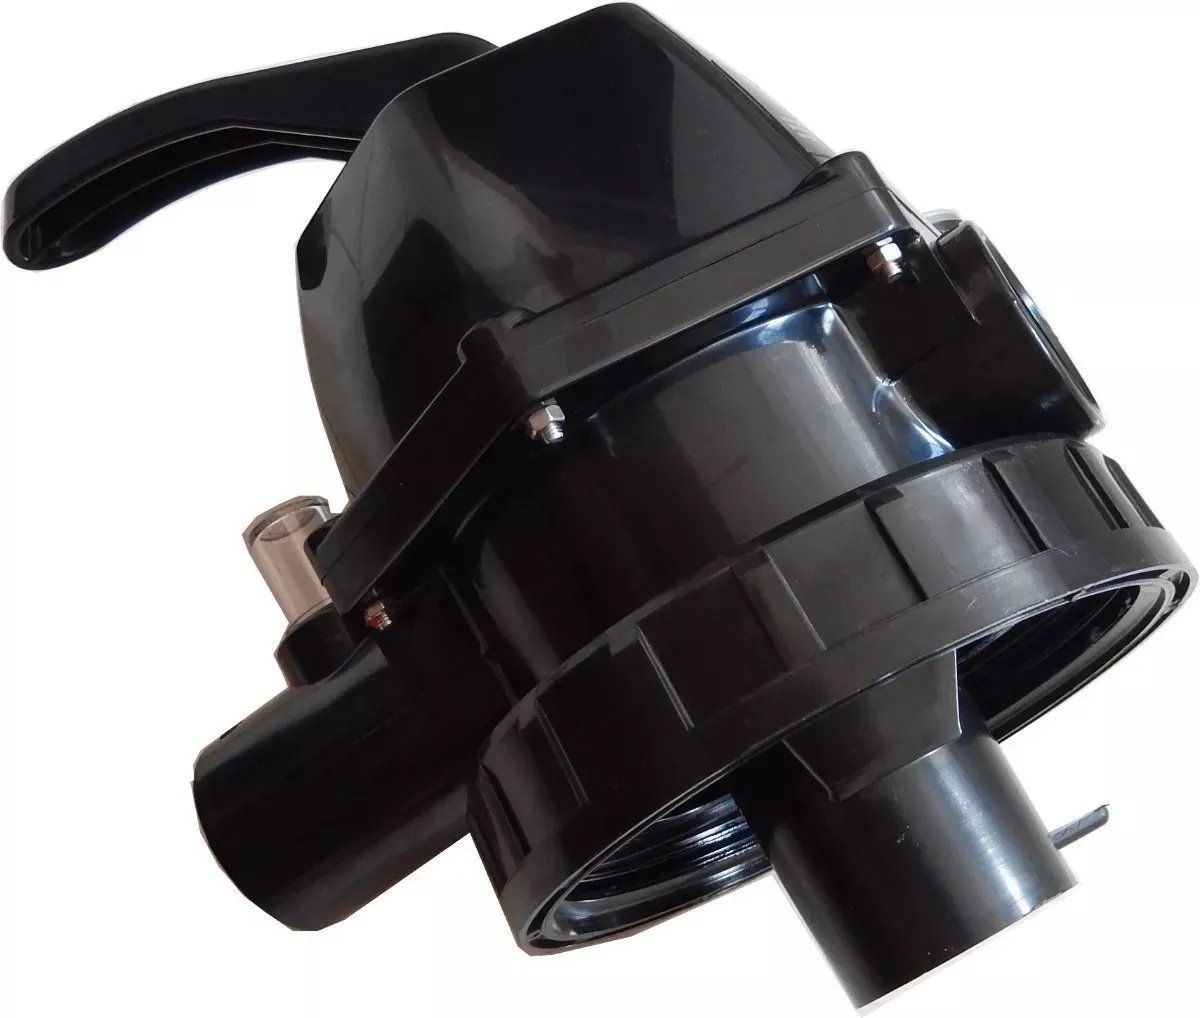 Válvula Cabeçote Rosqueada com Manômetro uso Universal Filtros F450P até F750P - Nautilus - 2